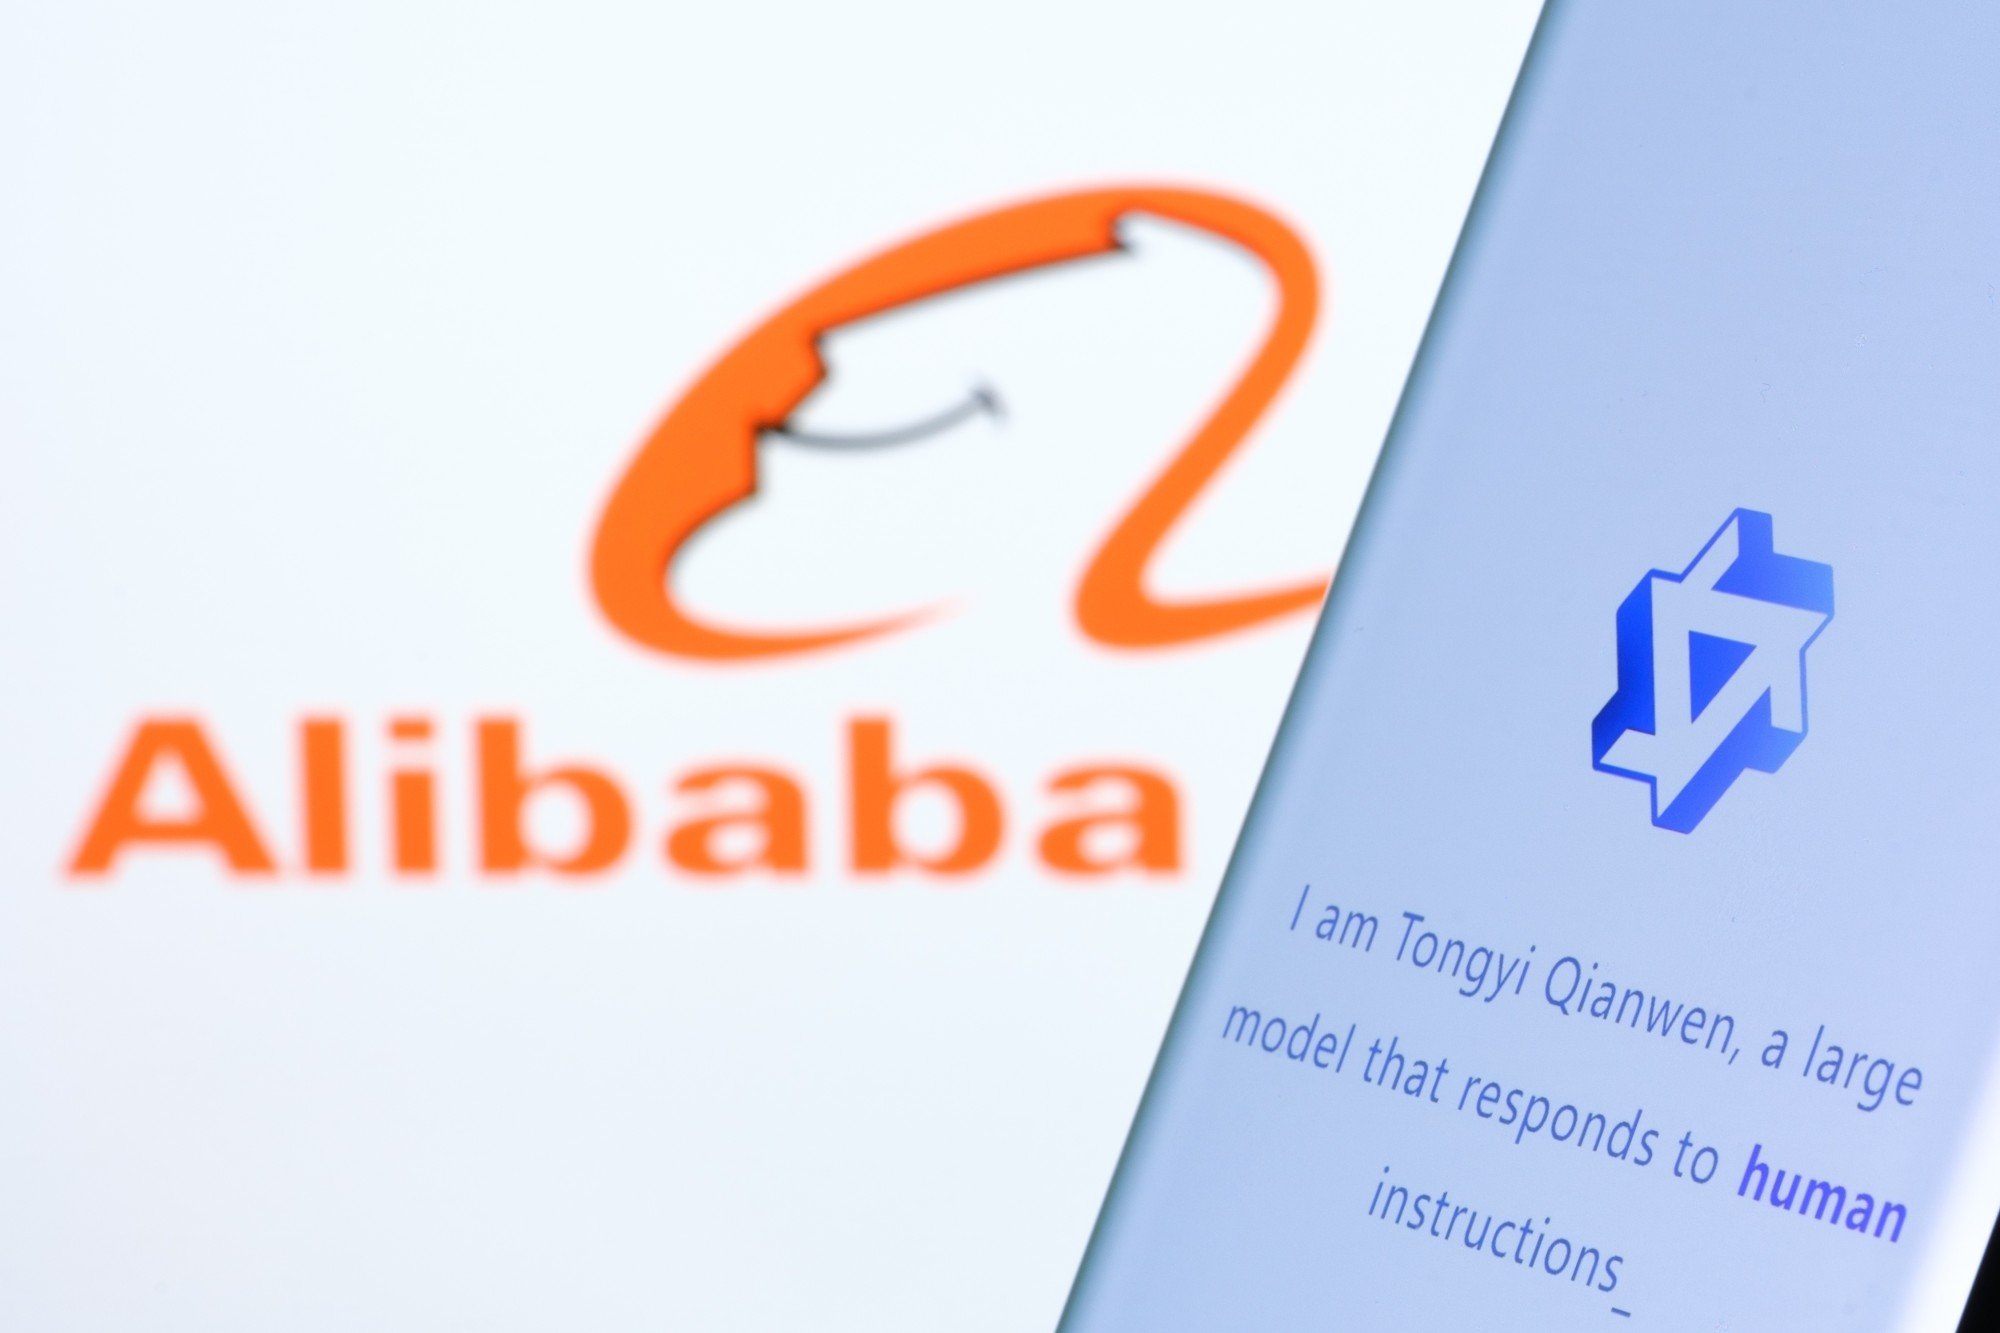 Alibaba định hướng lại hoạt động kinh doanh, tái cơ cấu sau hàng loạt sai lầm- Ảnh 8.